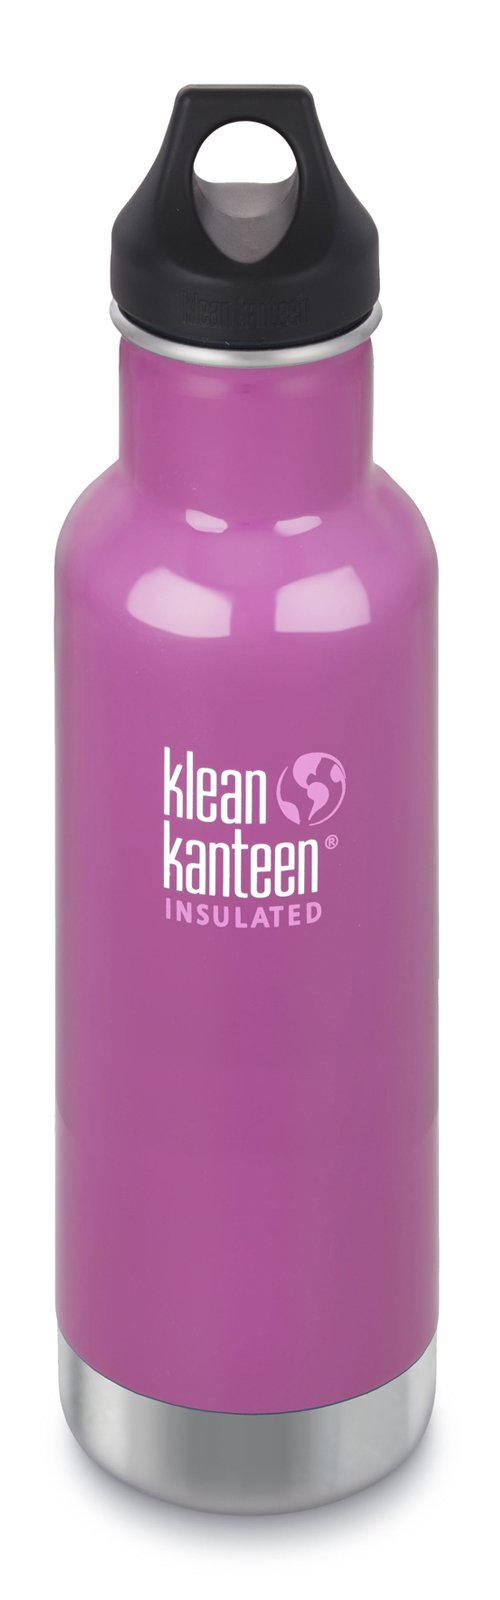 Klean Kanteen( clean can tea n) in s rate Classic bottle 12ozmedou flower 19320039114012